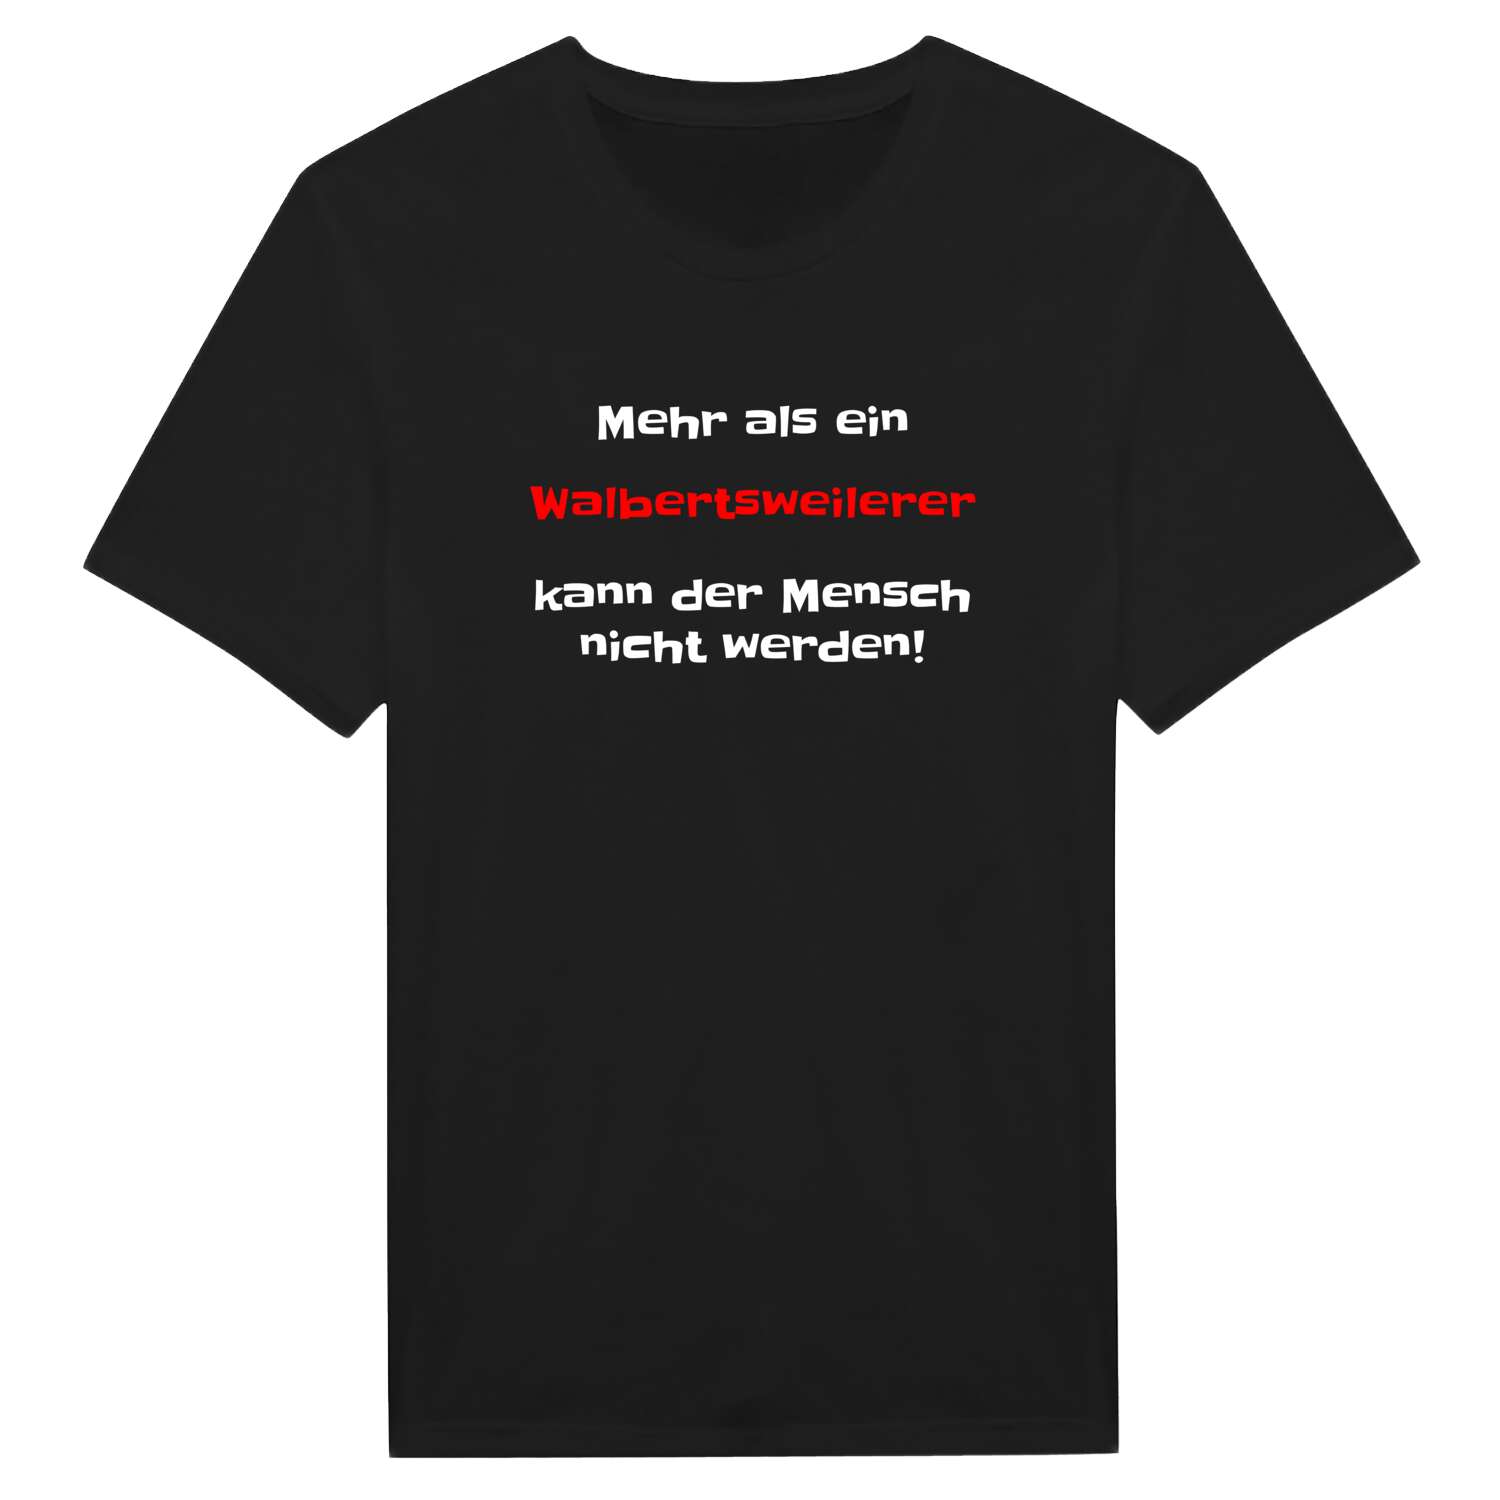 Walbertsweiler T-Shirt »Mehr als ein«